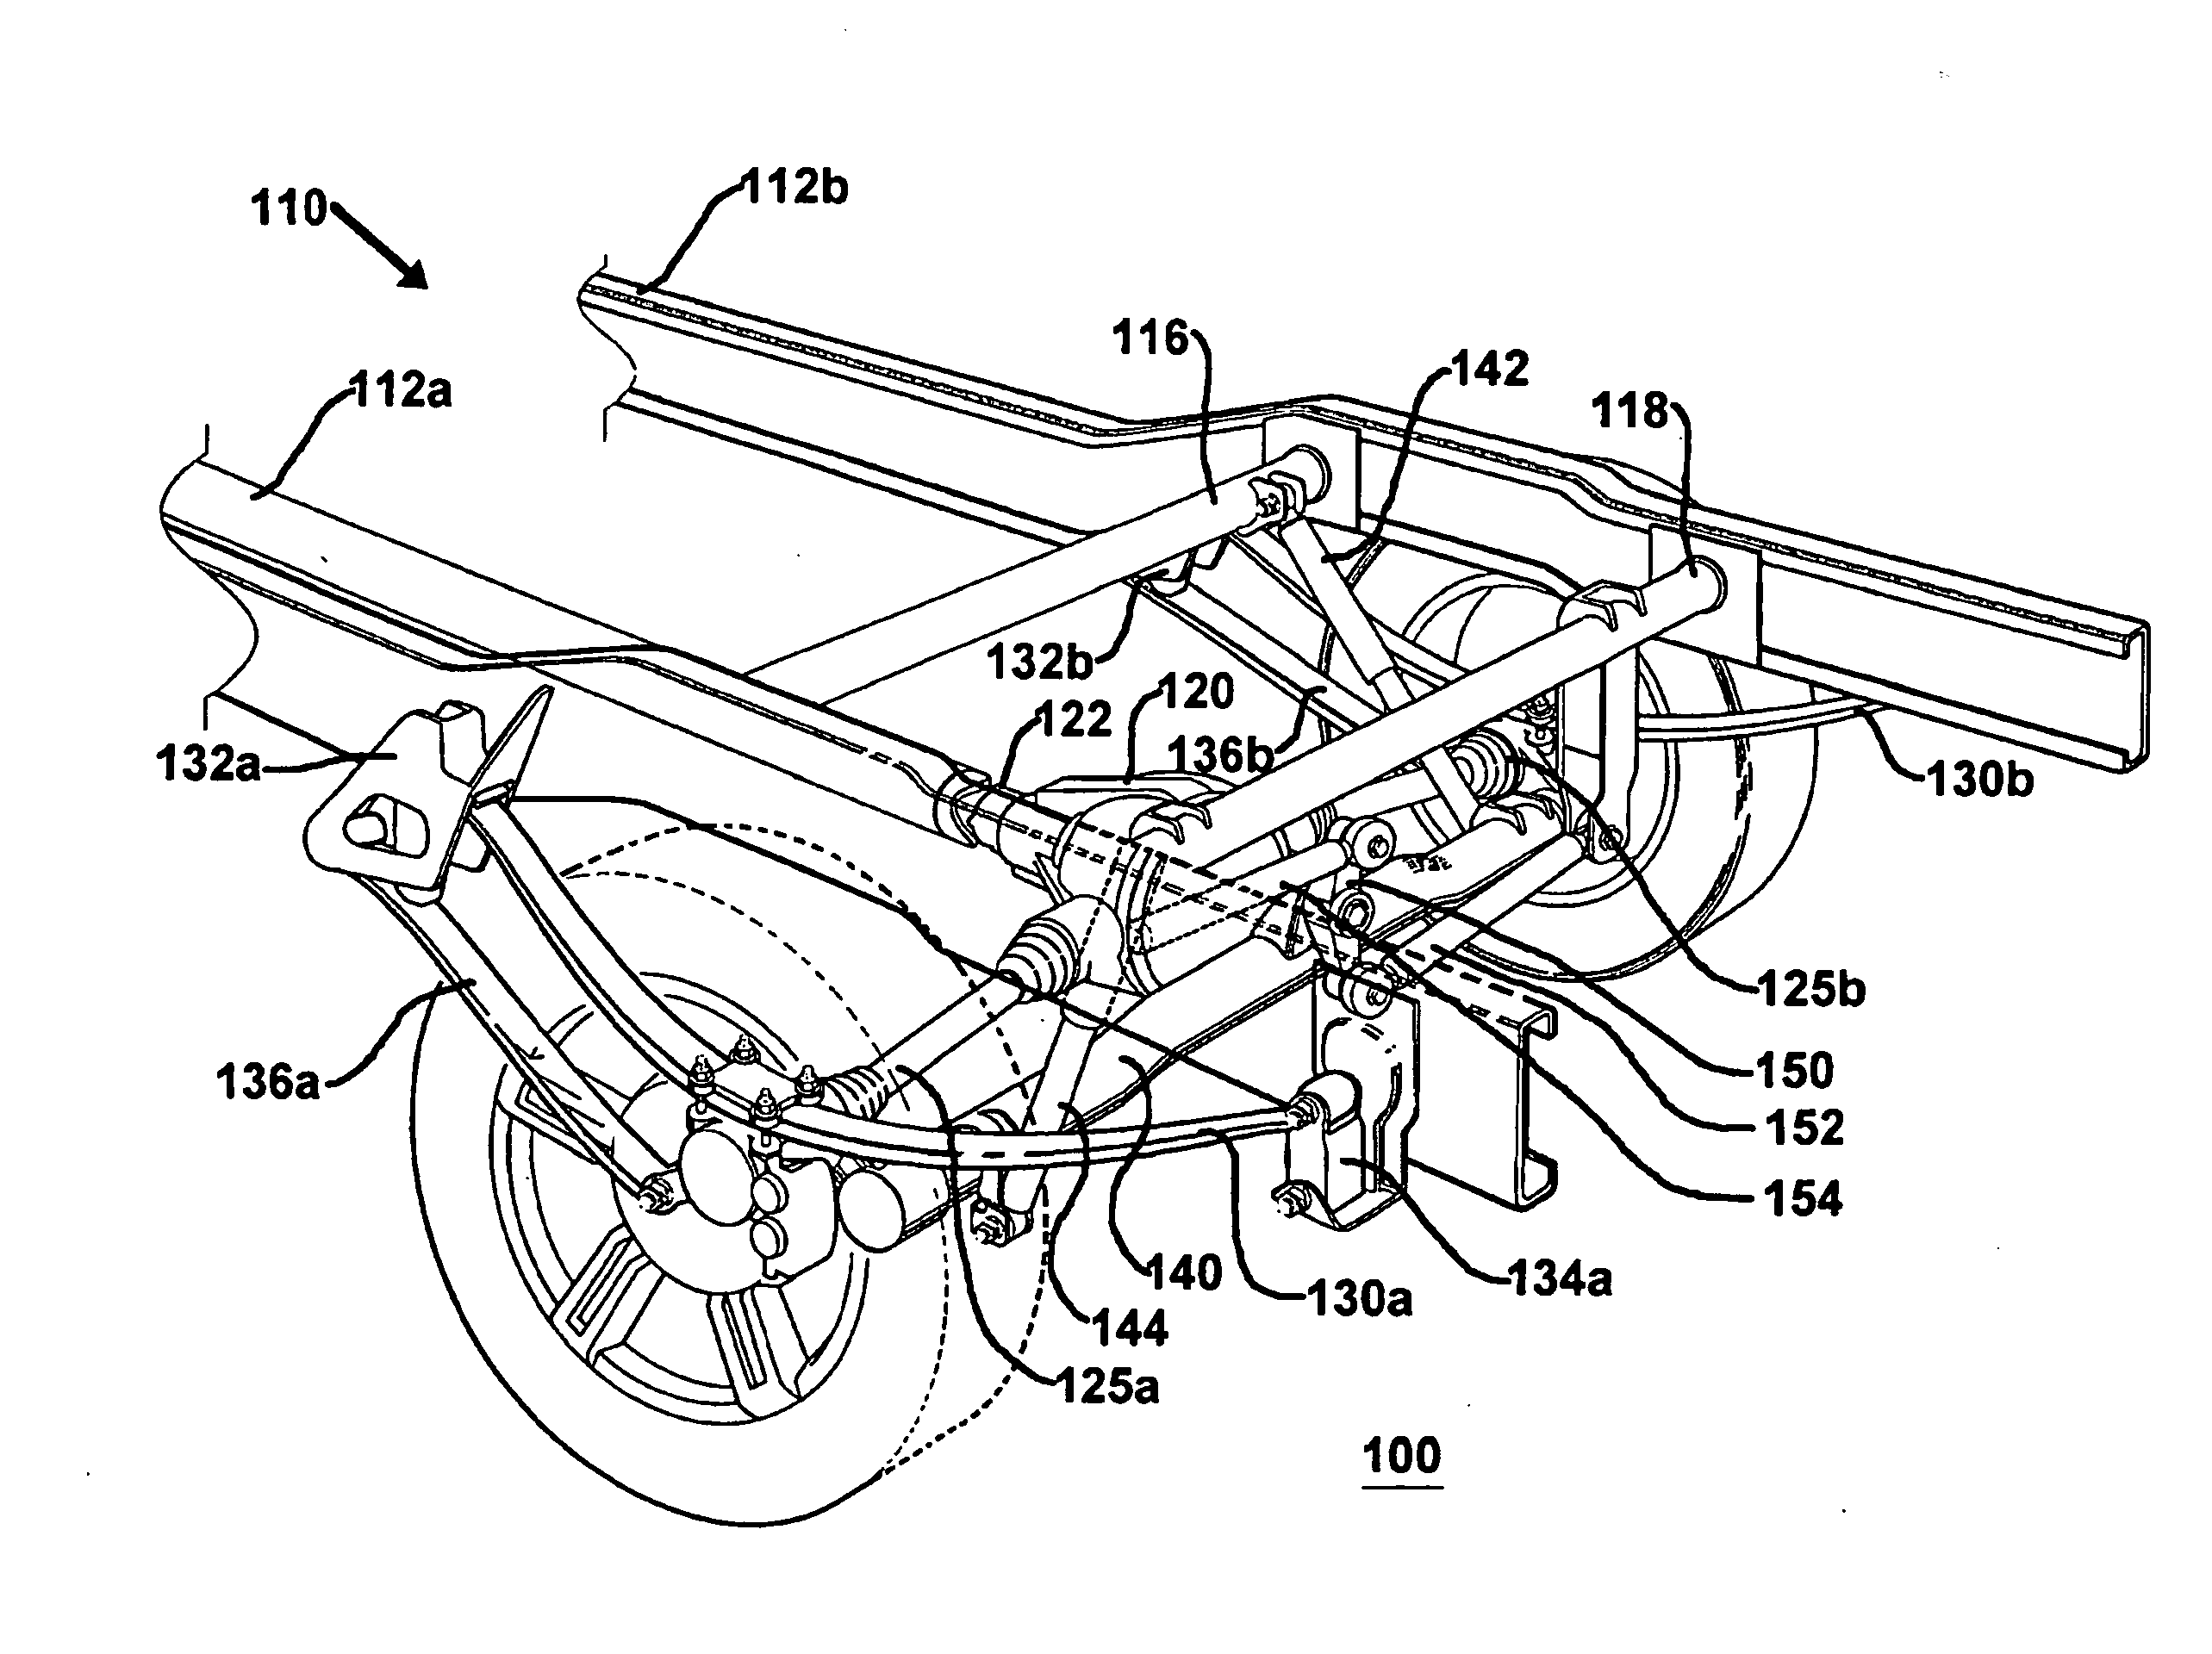 Dual leaf suspension for vehicle drive arrangement